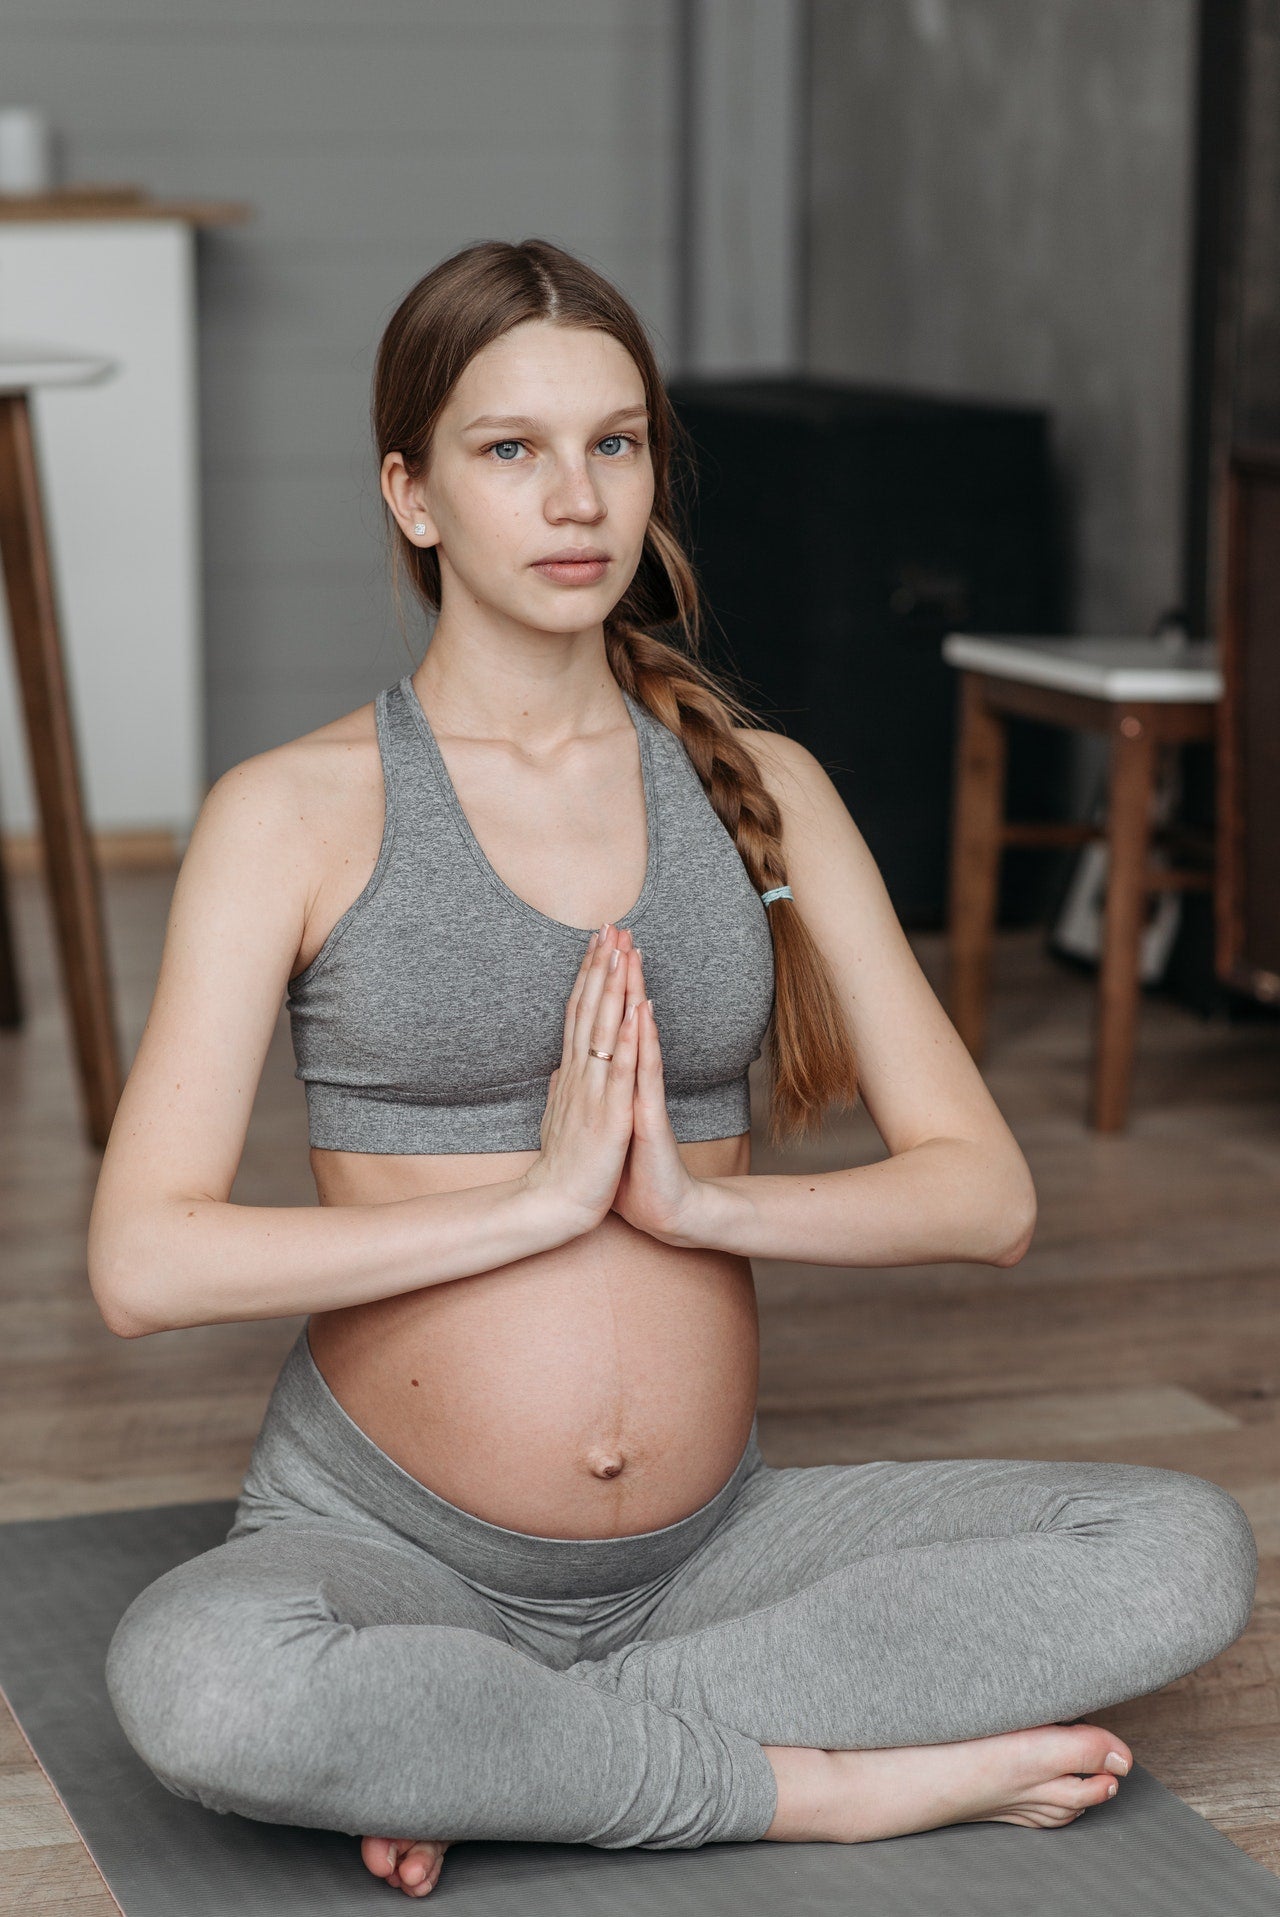 Yoga Kurs in der Schwangerschaft